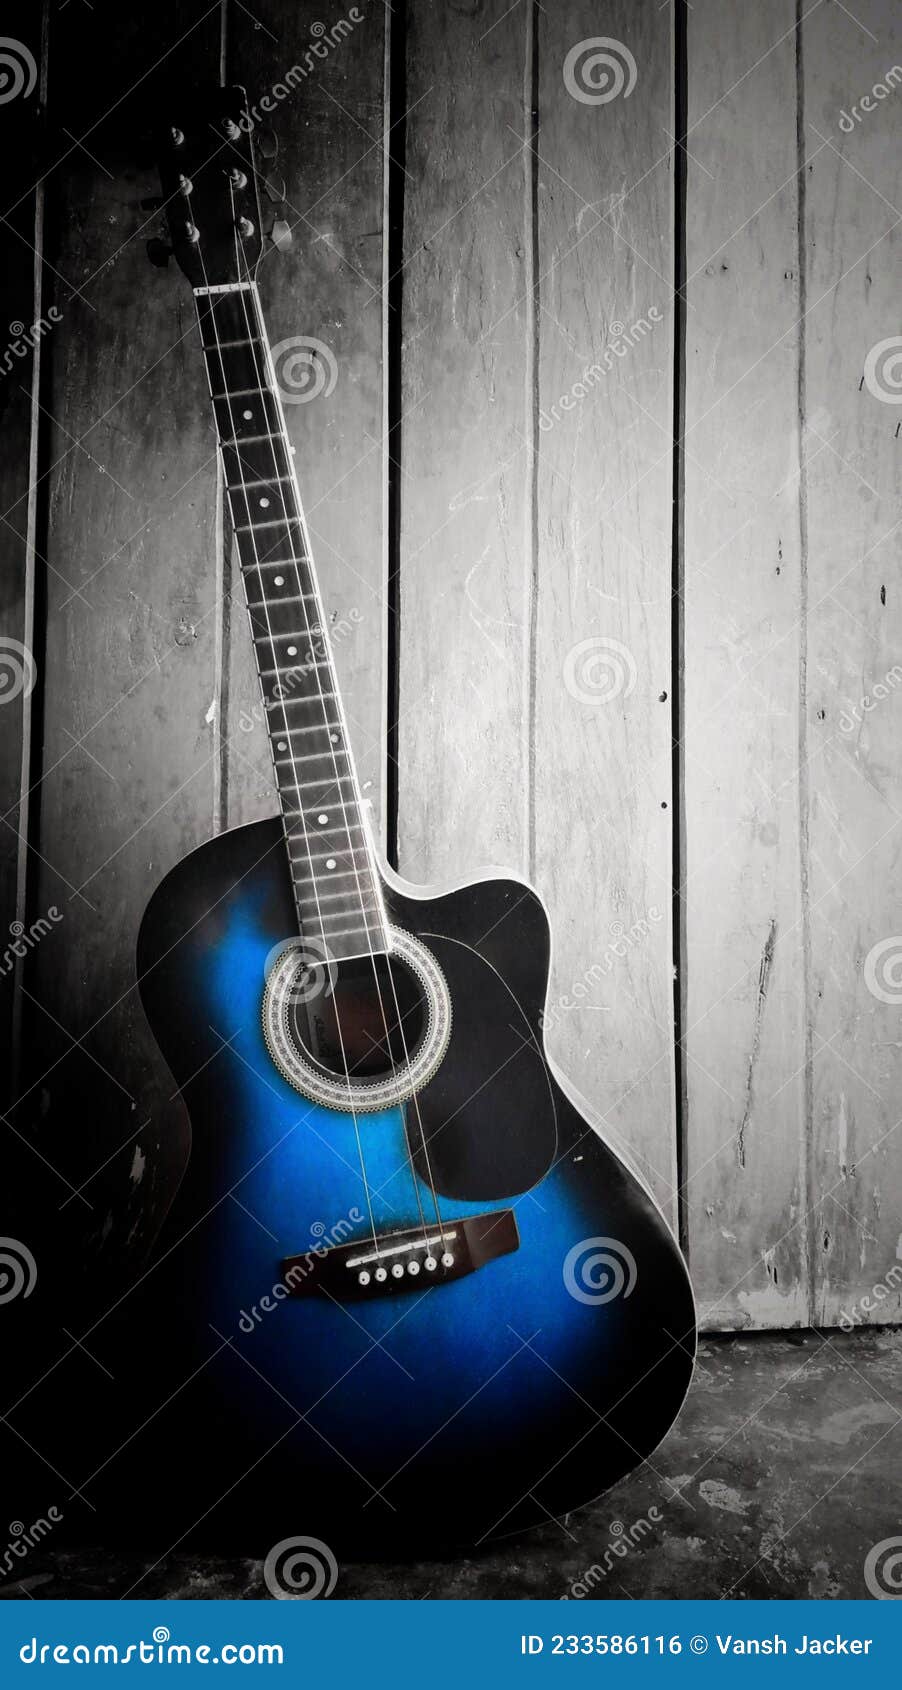 Guitar Wallpaper  iPhone Android  Desktop Backgrounds  Guitar wallpaper  iphone Acoustic guitar photography Guitar